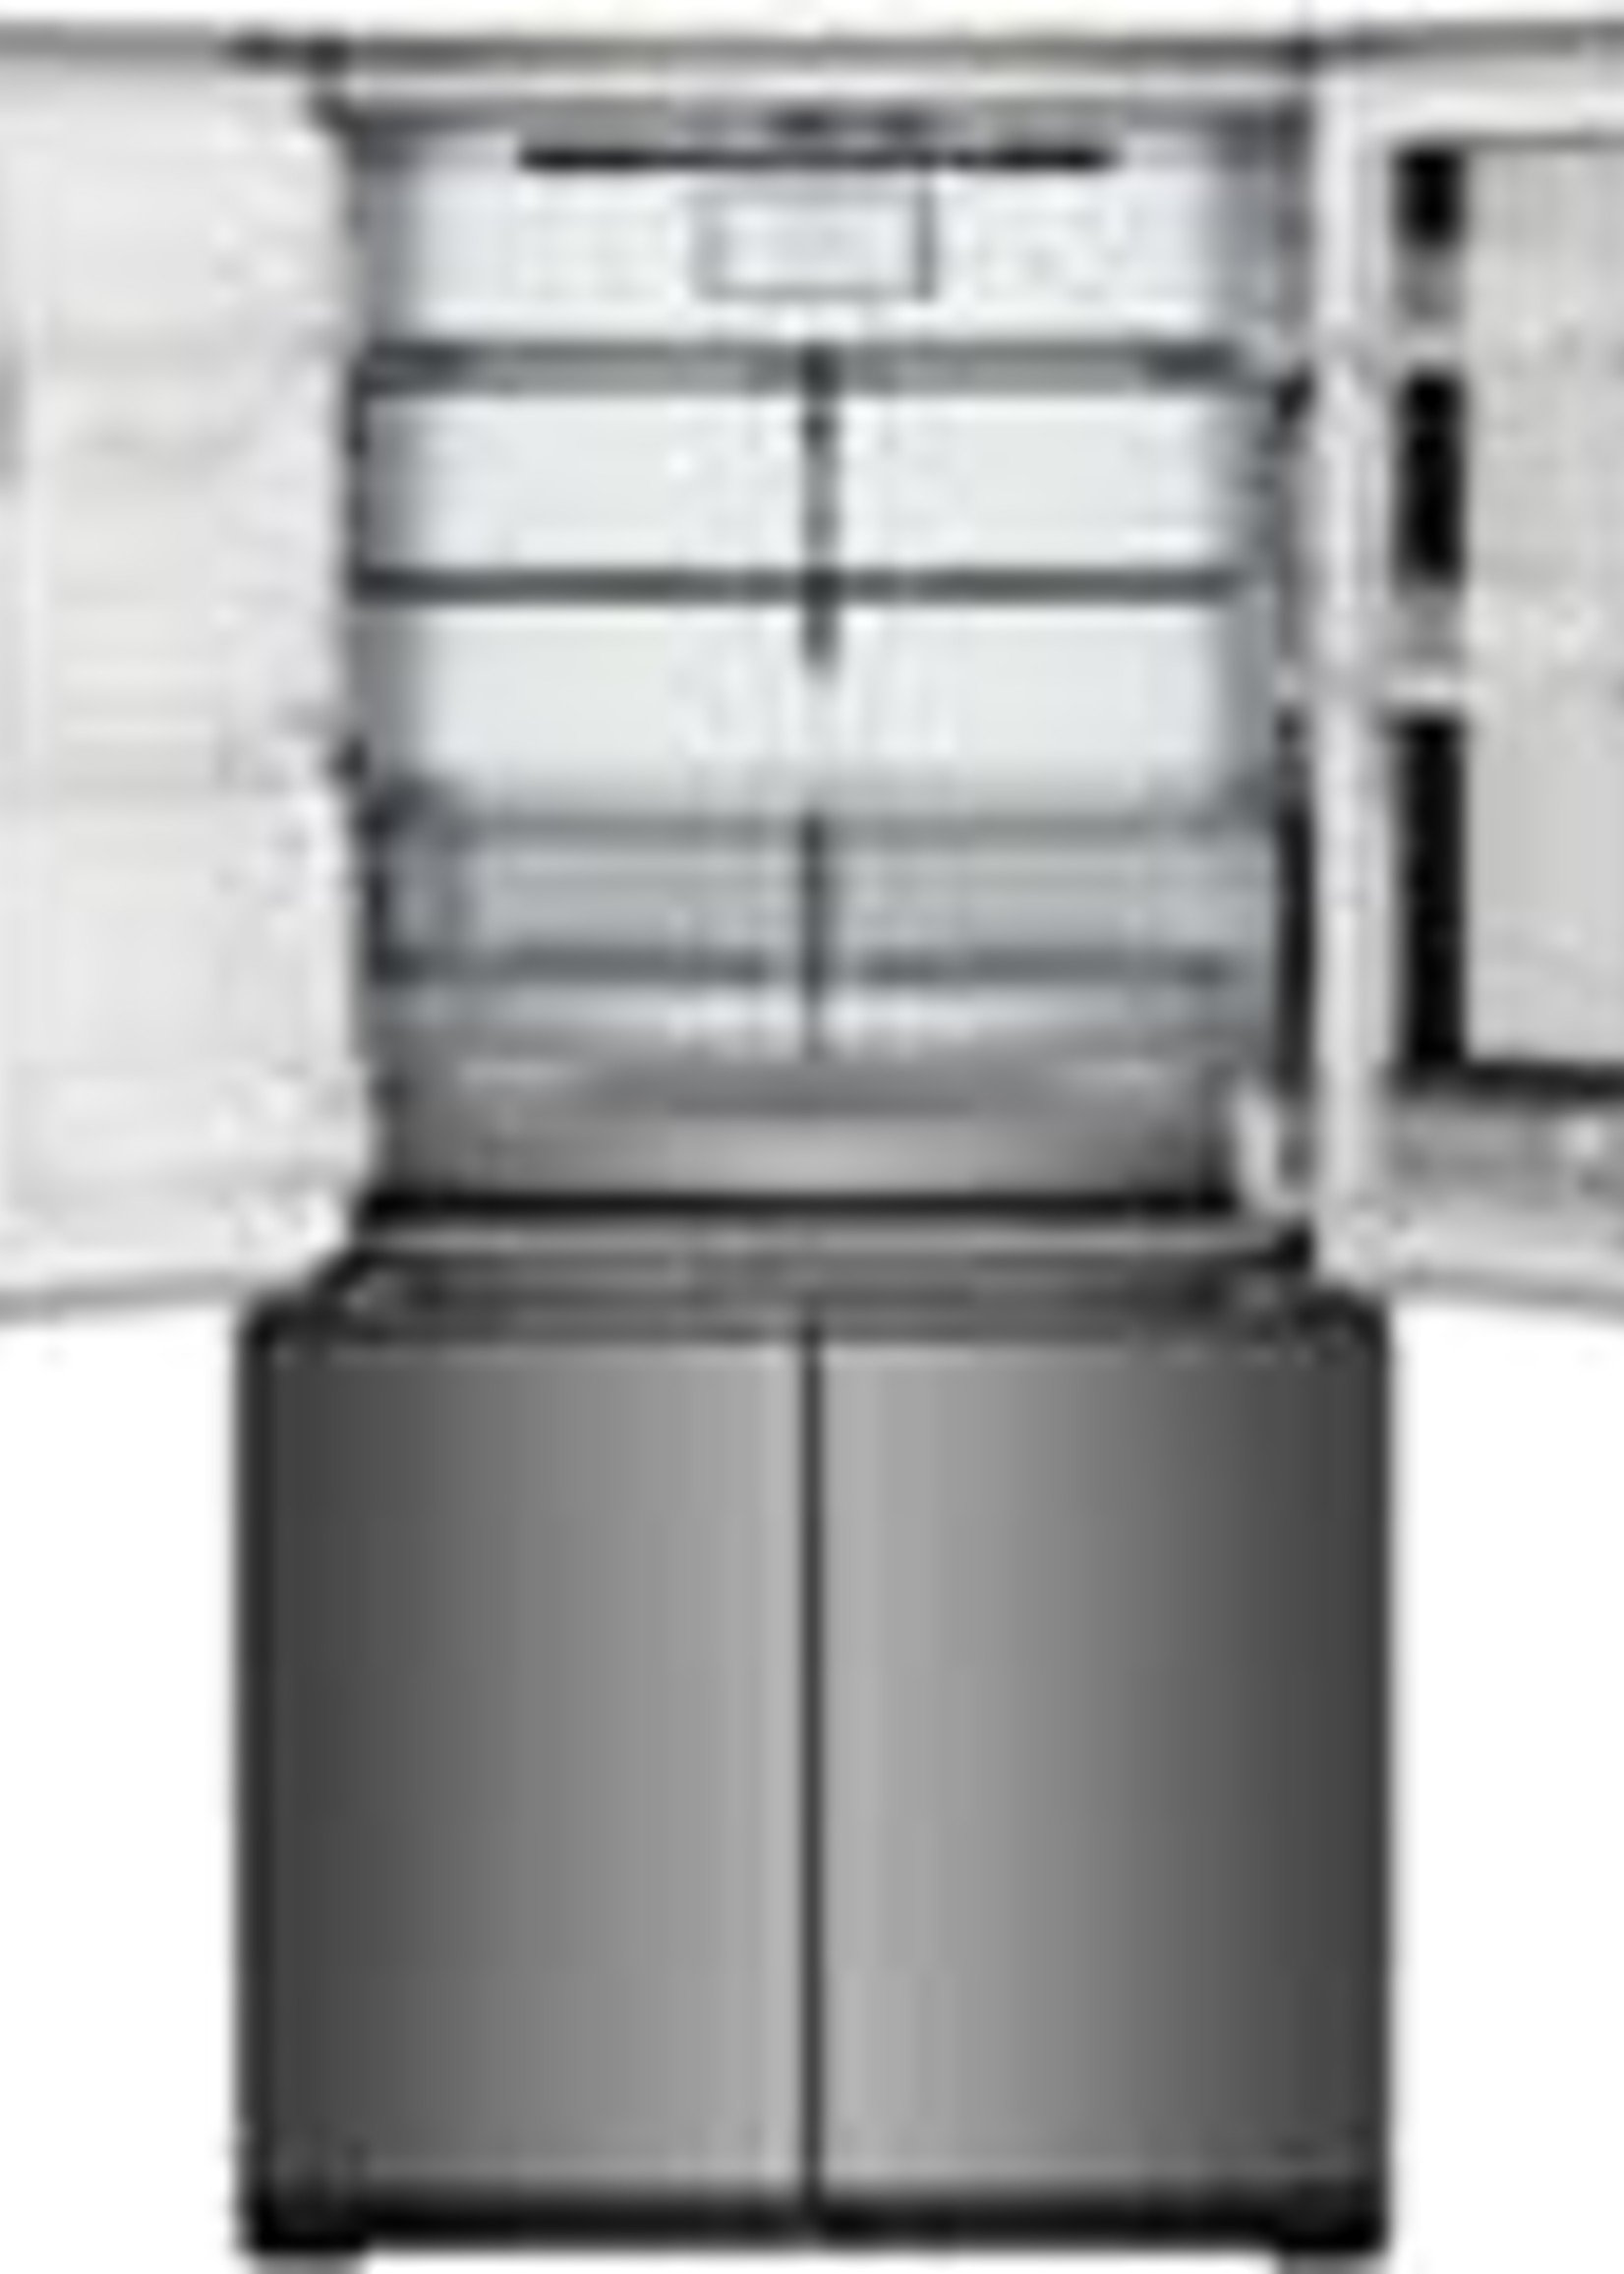 LG *LG Signature URNTS3106N  30.8 Cu. Ft. French Door-in-Door Smart Refrigerator with InstaView - Textured steel